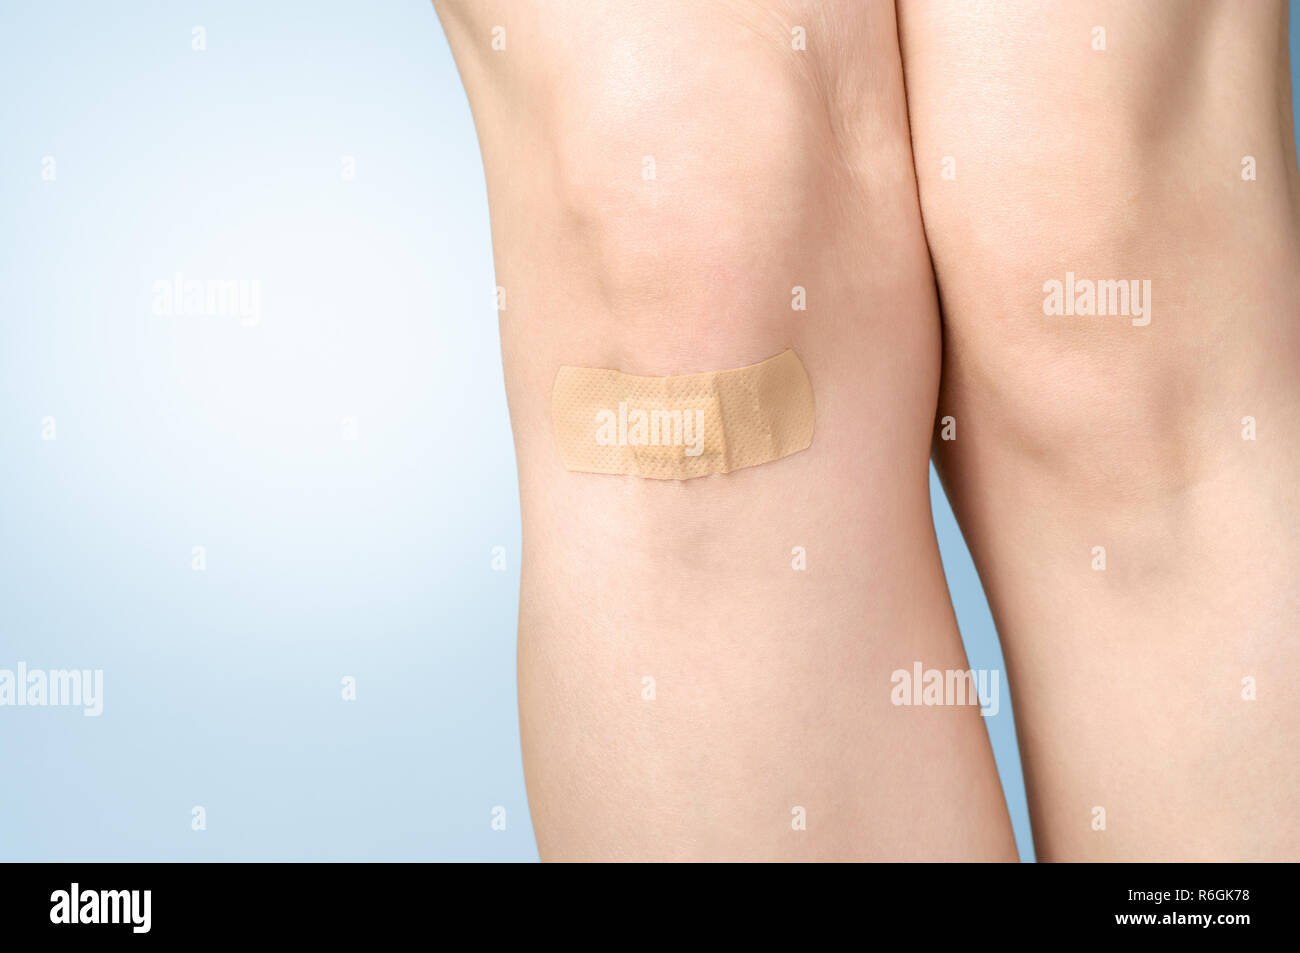 Plaster on female leg Stock Photo